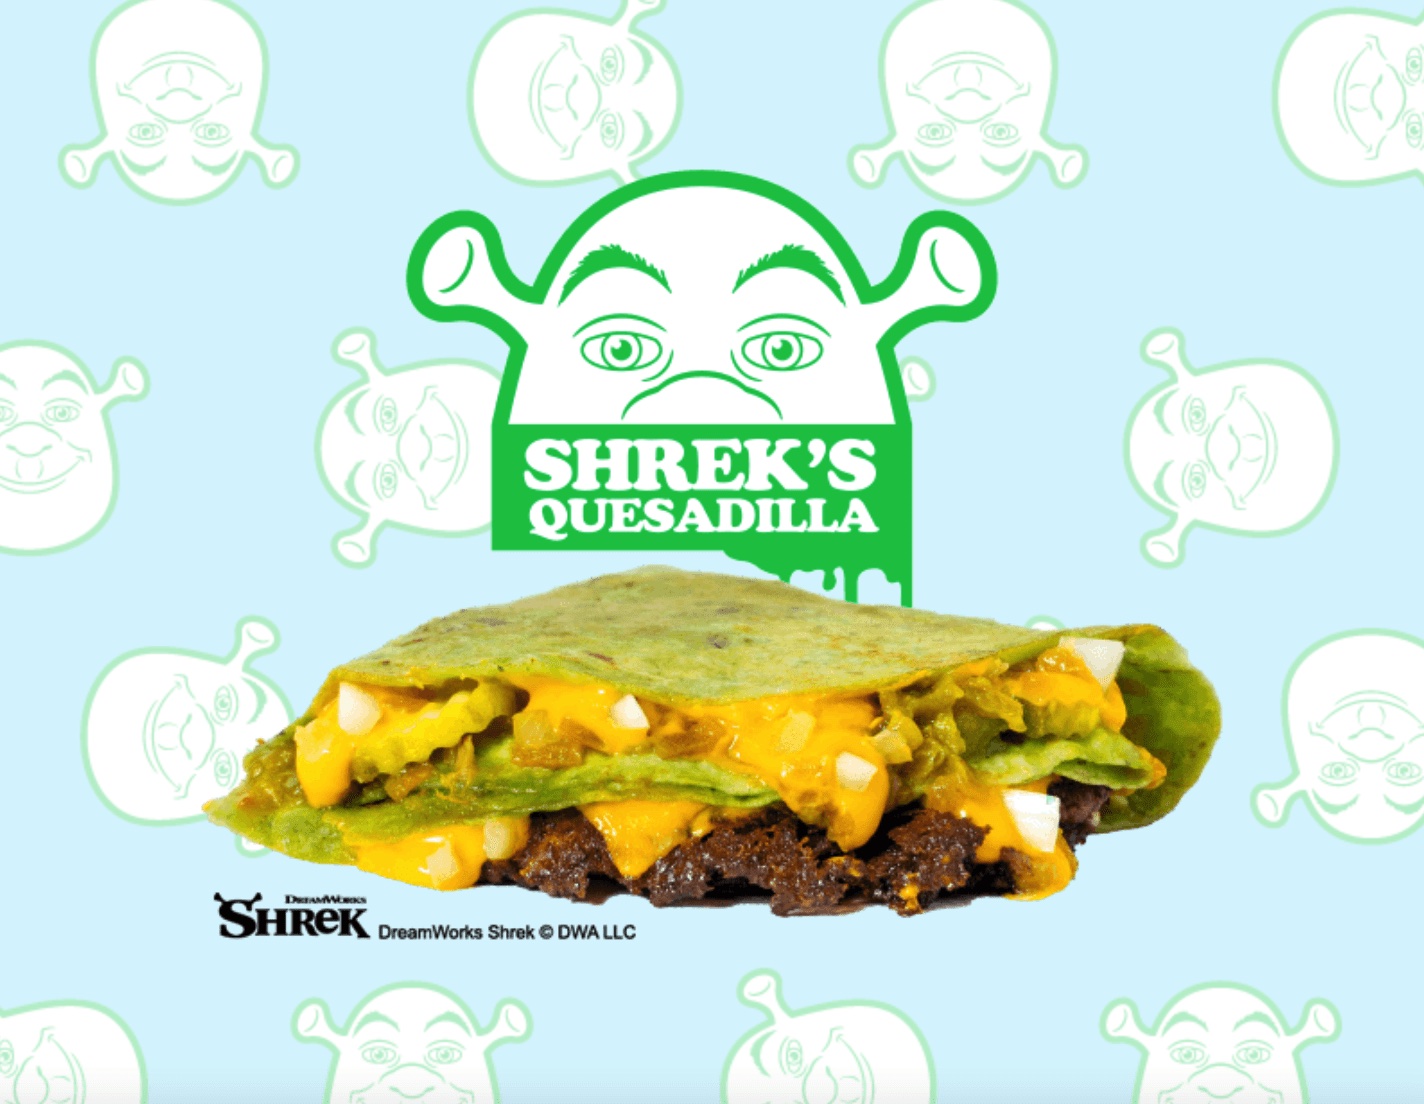 MrBeast Burger Shrek's Quesadilla